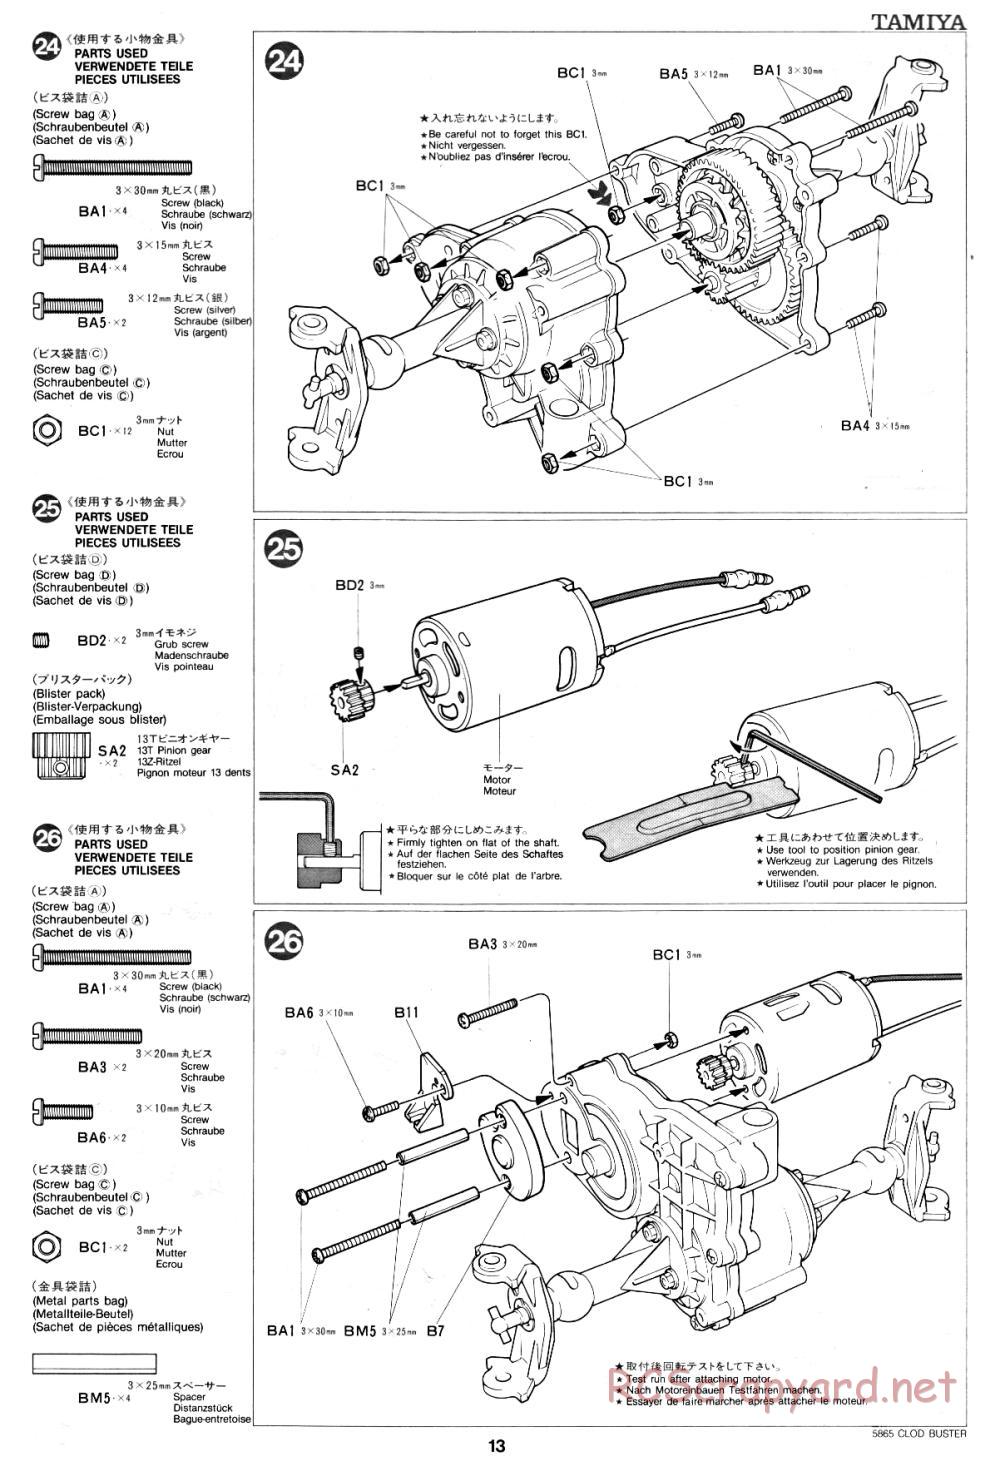 Tamiya - Clod Buster - 58065 - Manual - Page 13